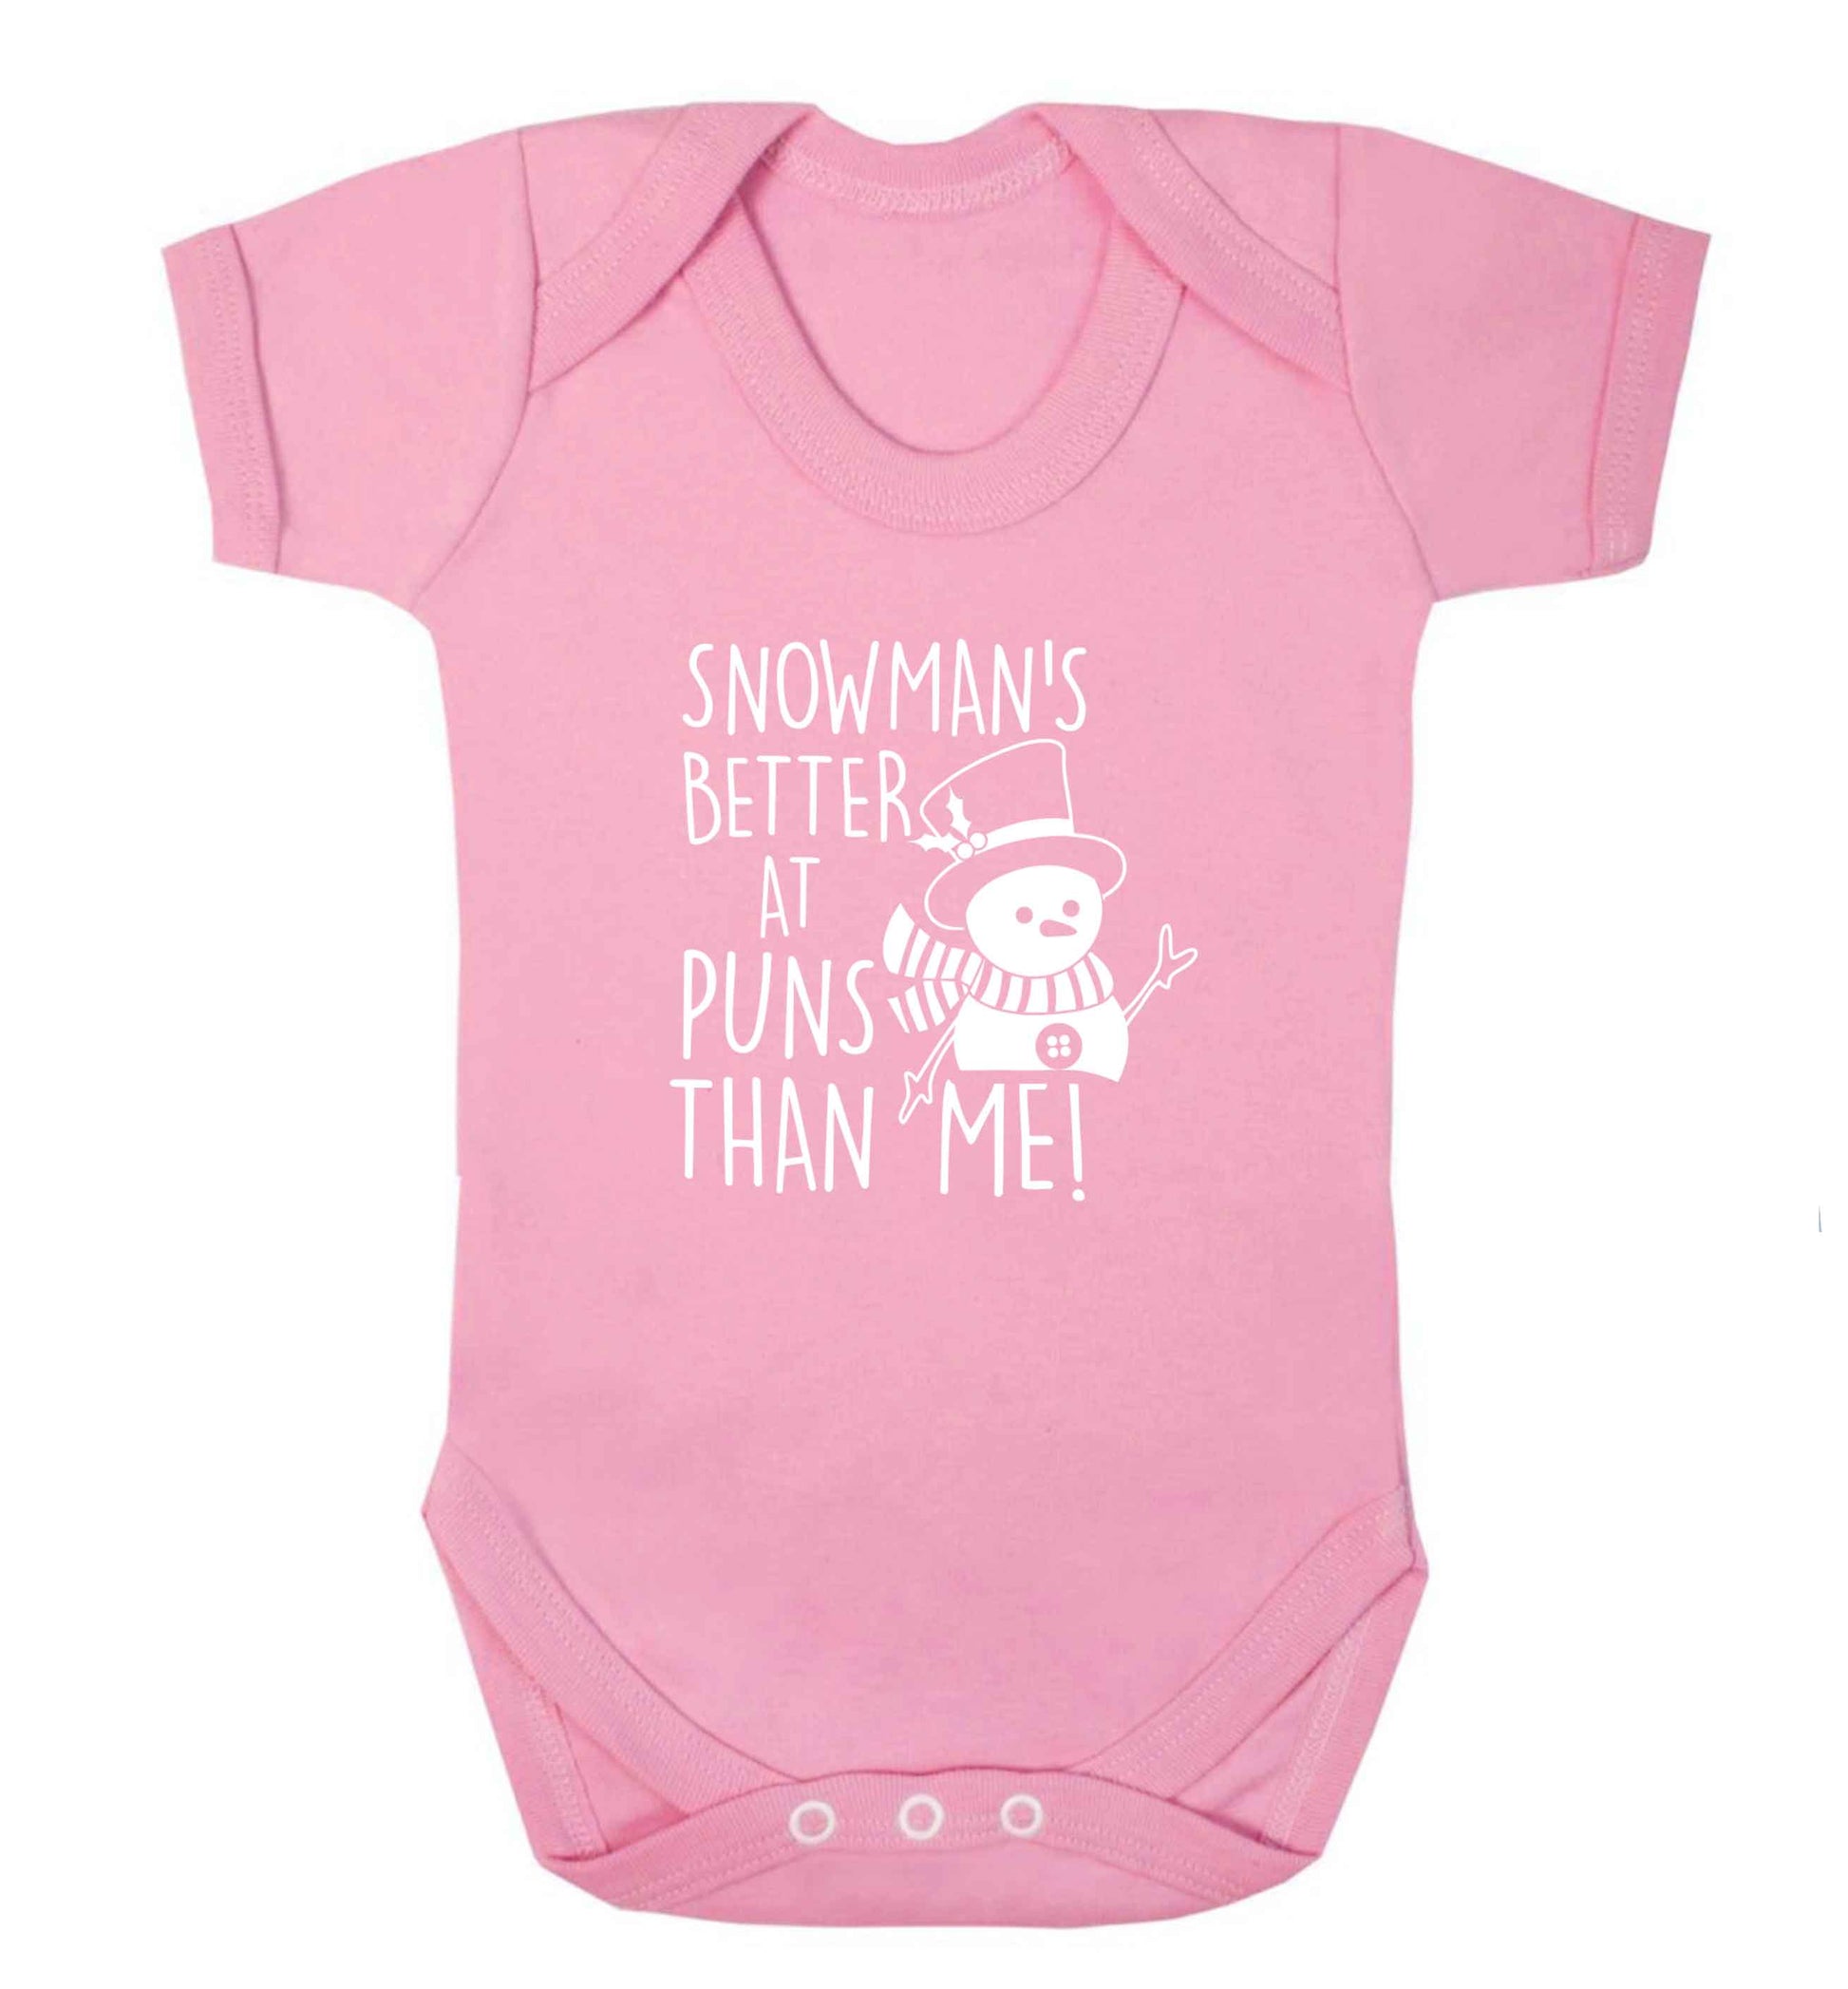 Snowman's Puns Me baby vest pale pink 18-24 months